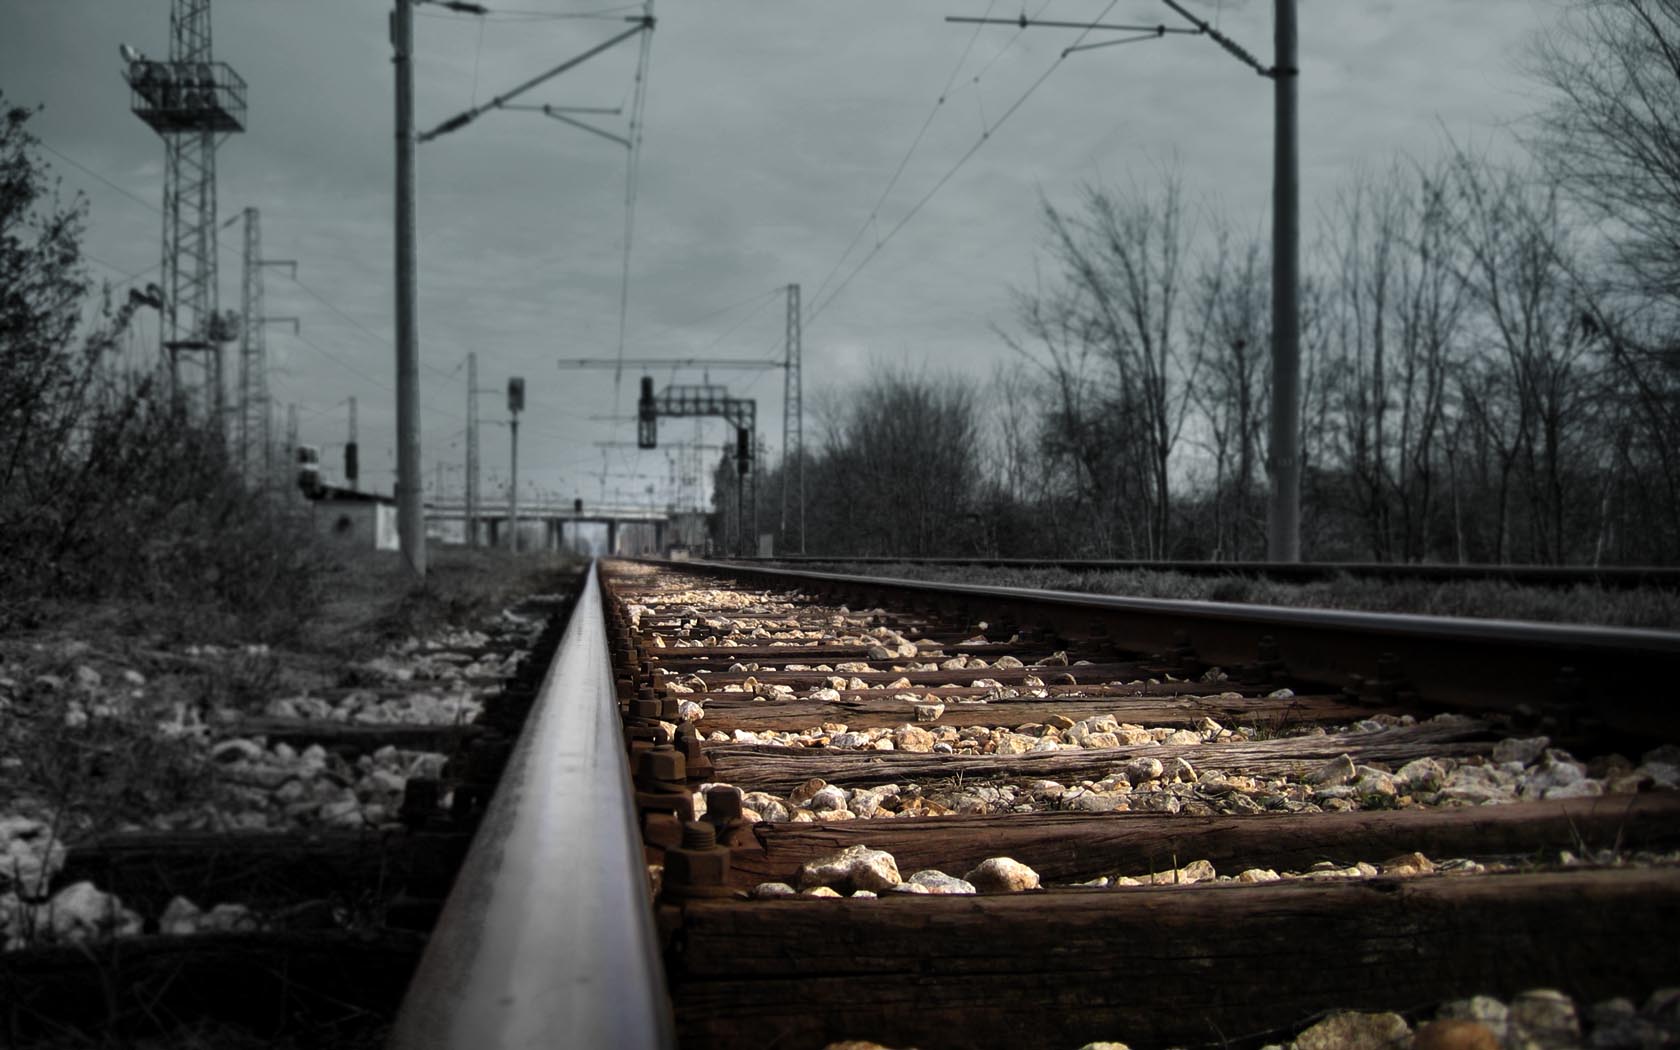 Fondos Vías de ferrocarril (Railroad Tracks) ADNFriki (6)